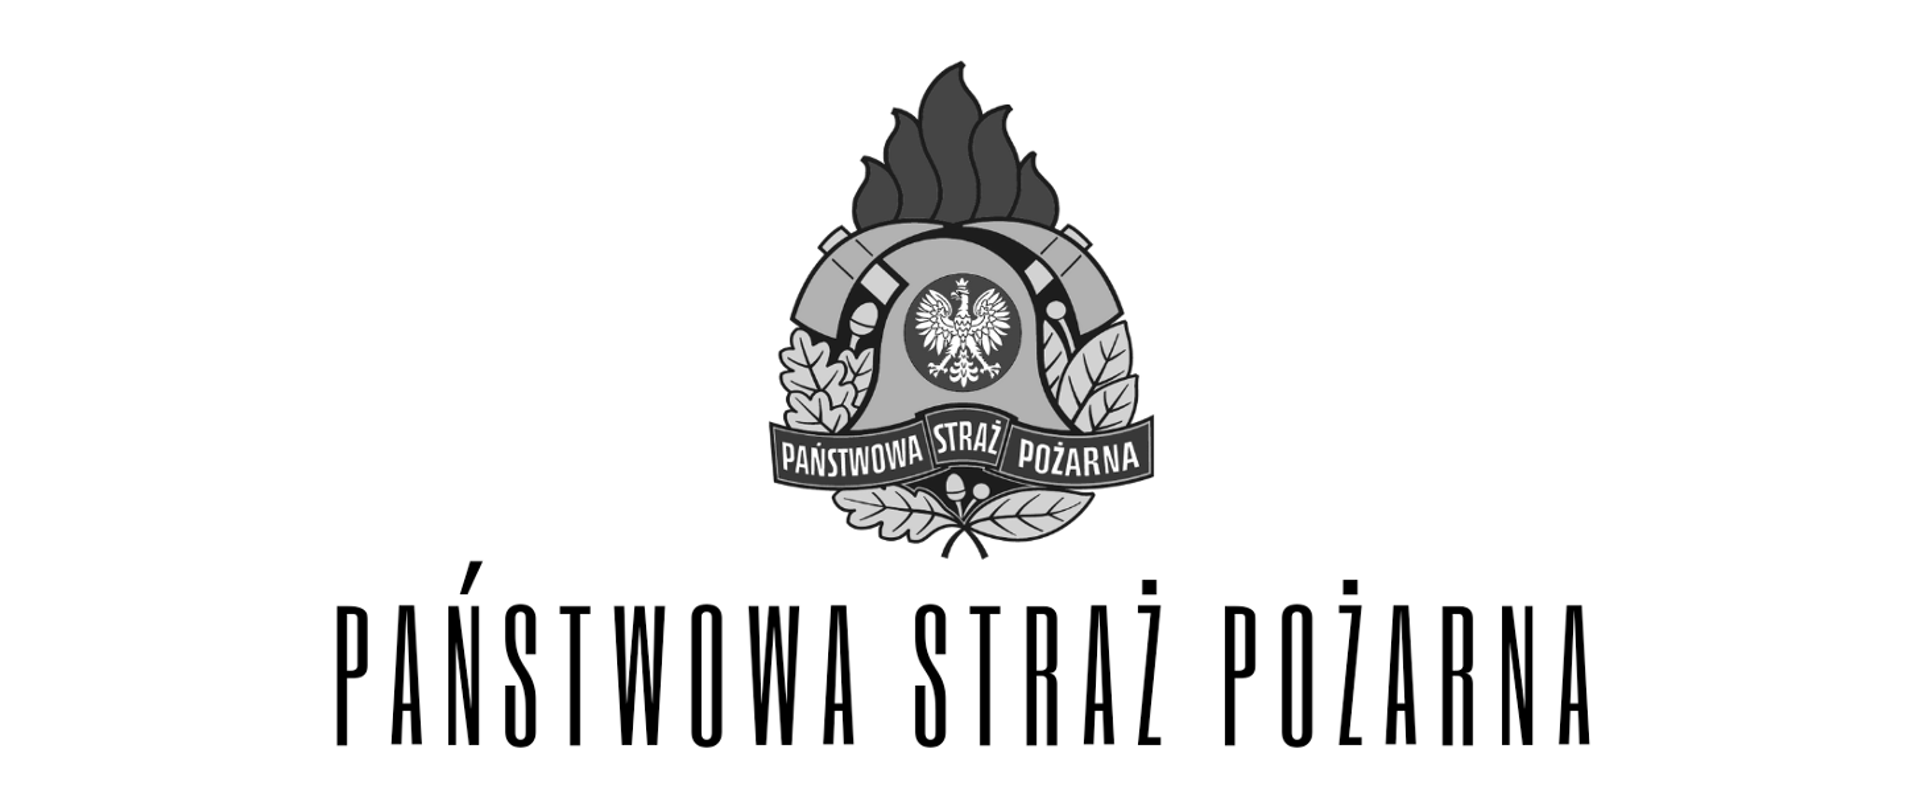 Zdjęcie przestawia szare logo Państwowej Straży Pożarnej oraz napis Państwowa Straż Pożarna